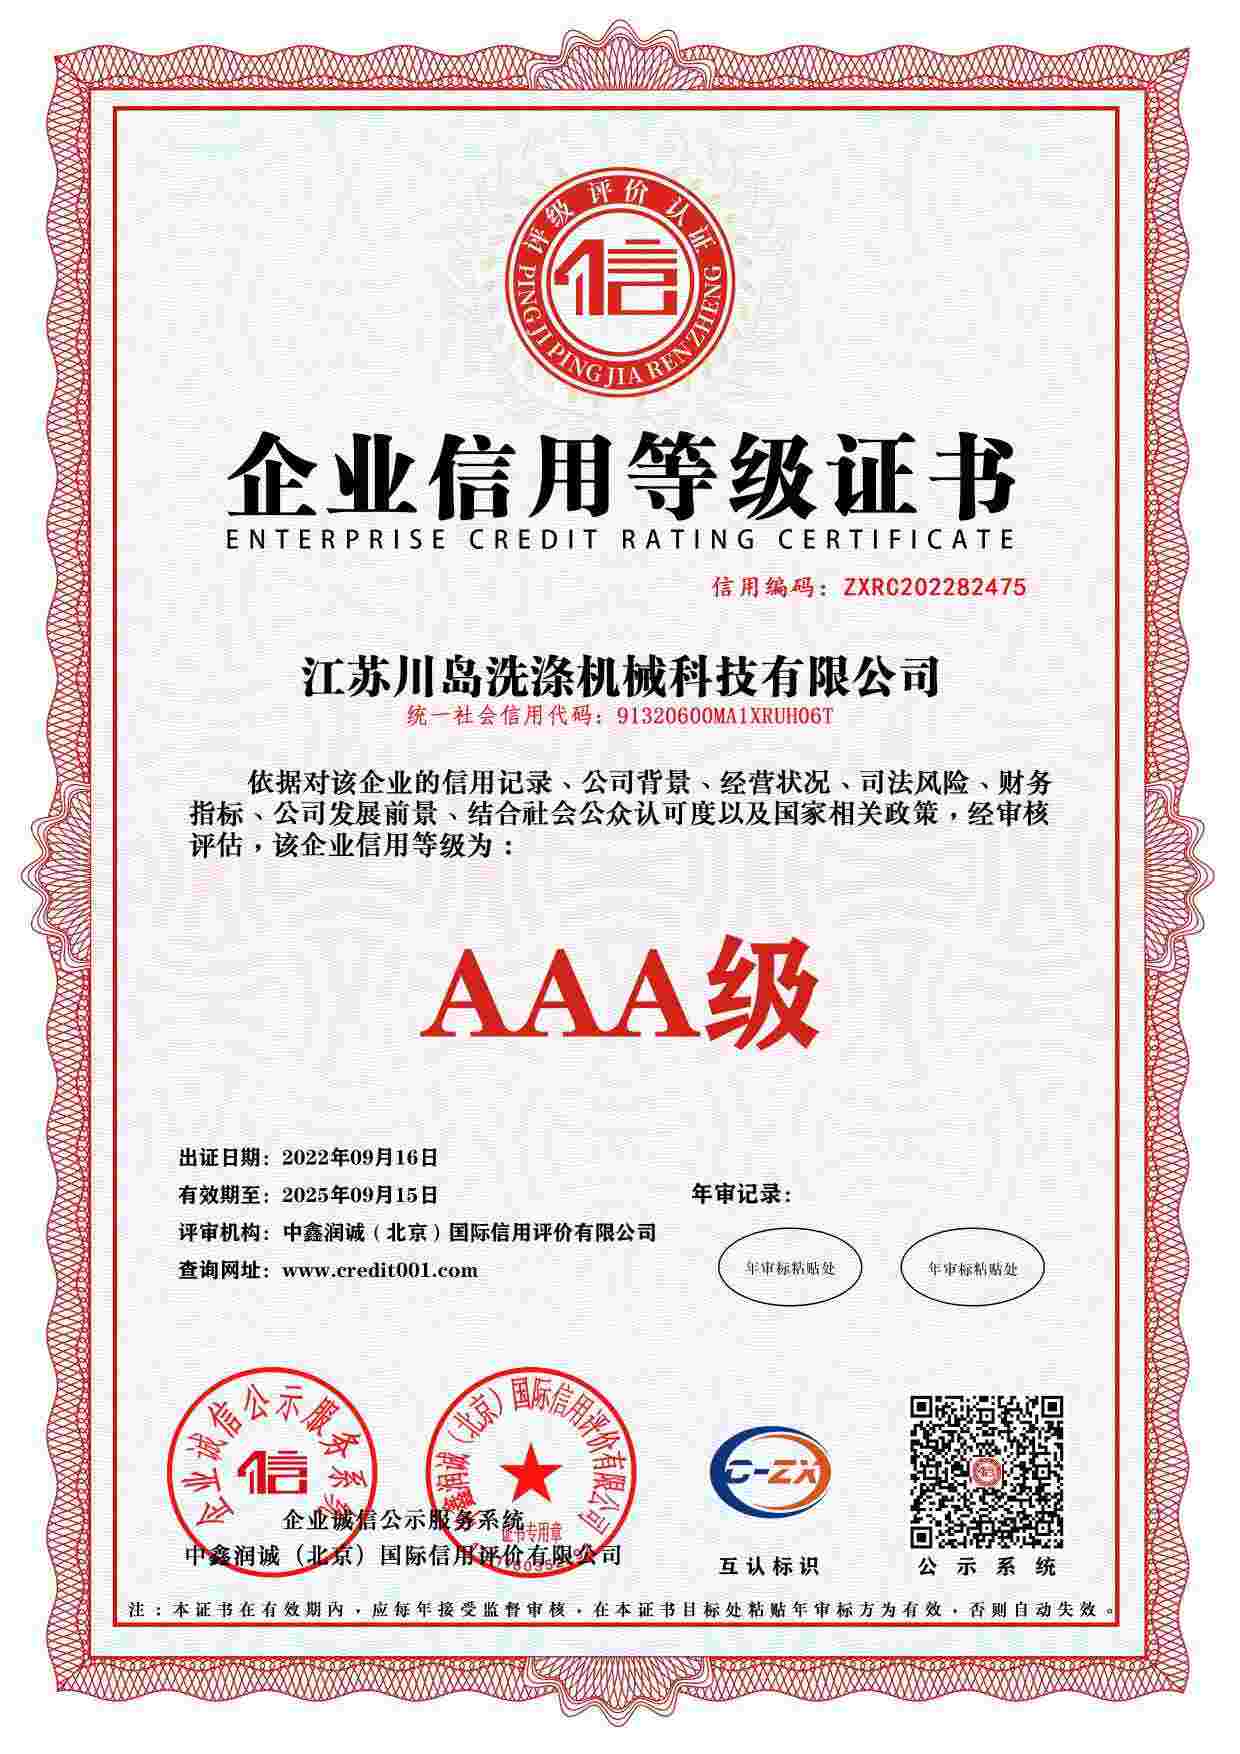 Enterprise credit rating certificate (1)